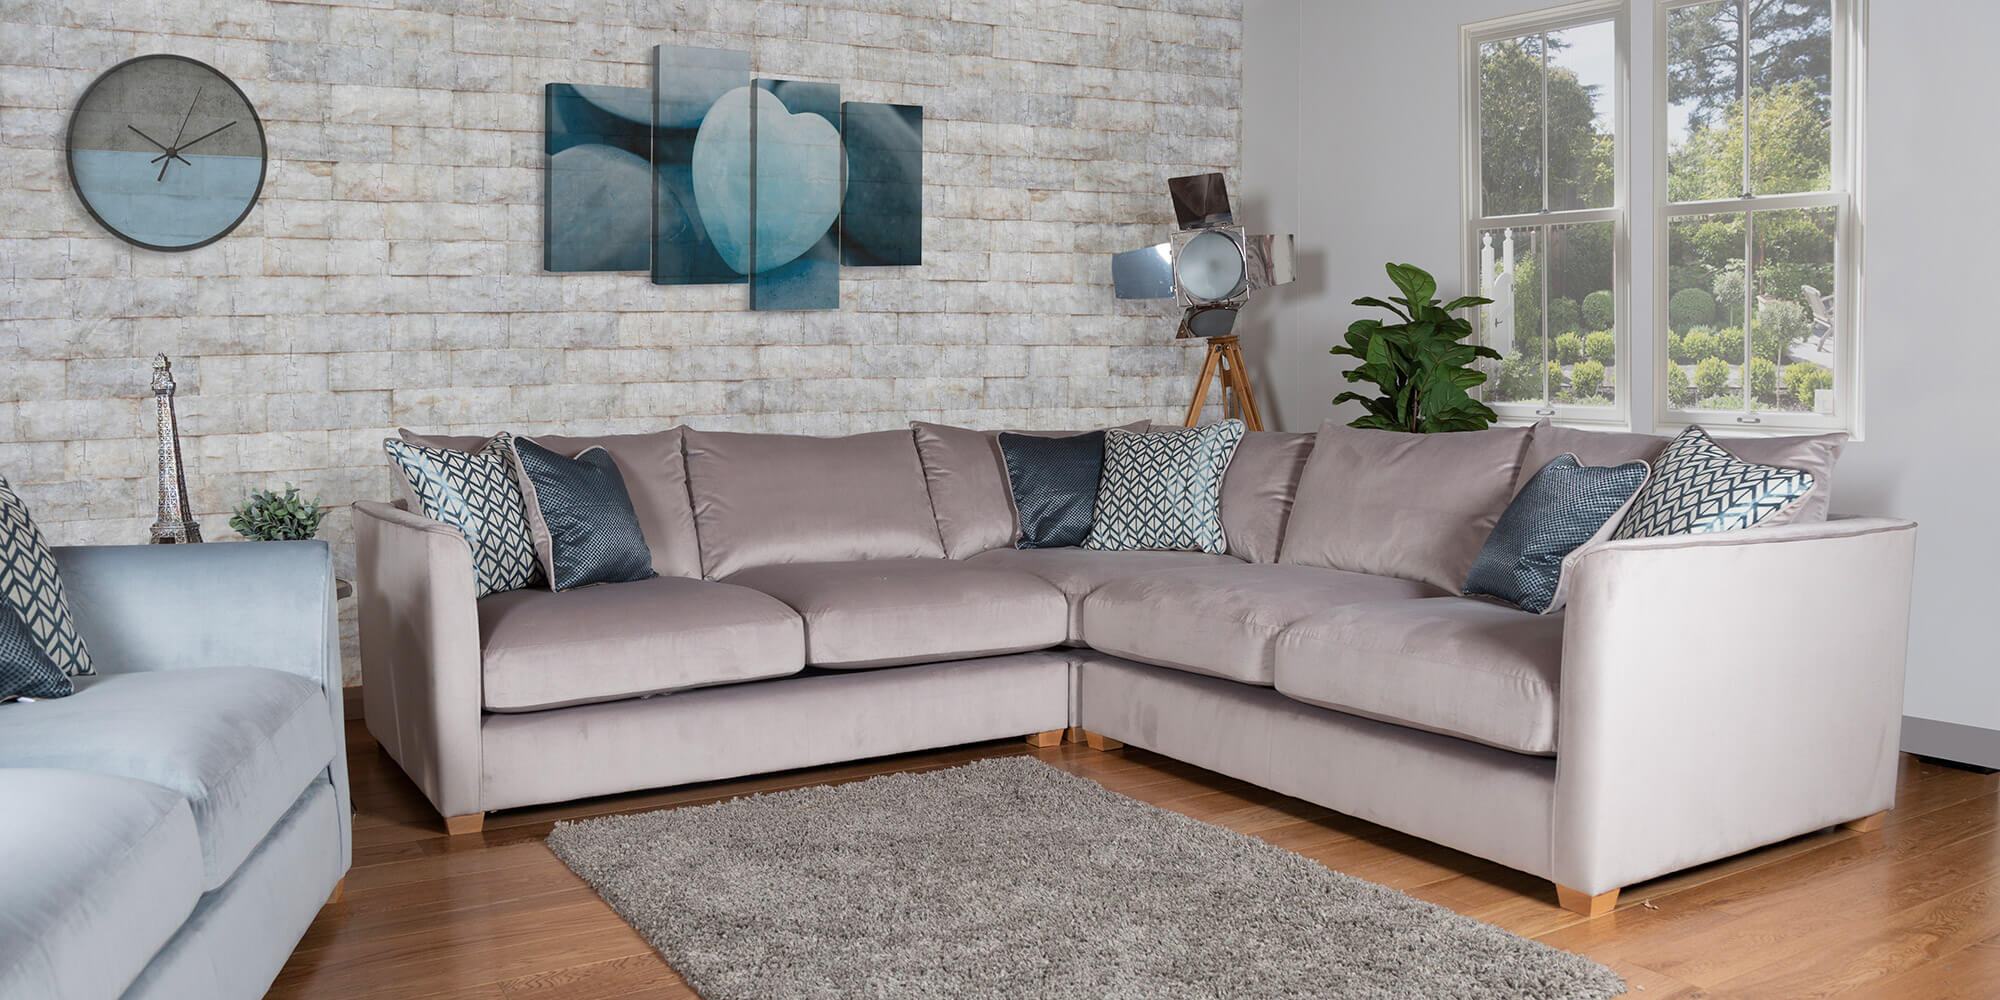 Showing image for Harper corner sofa - large